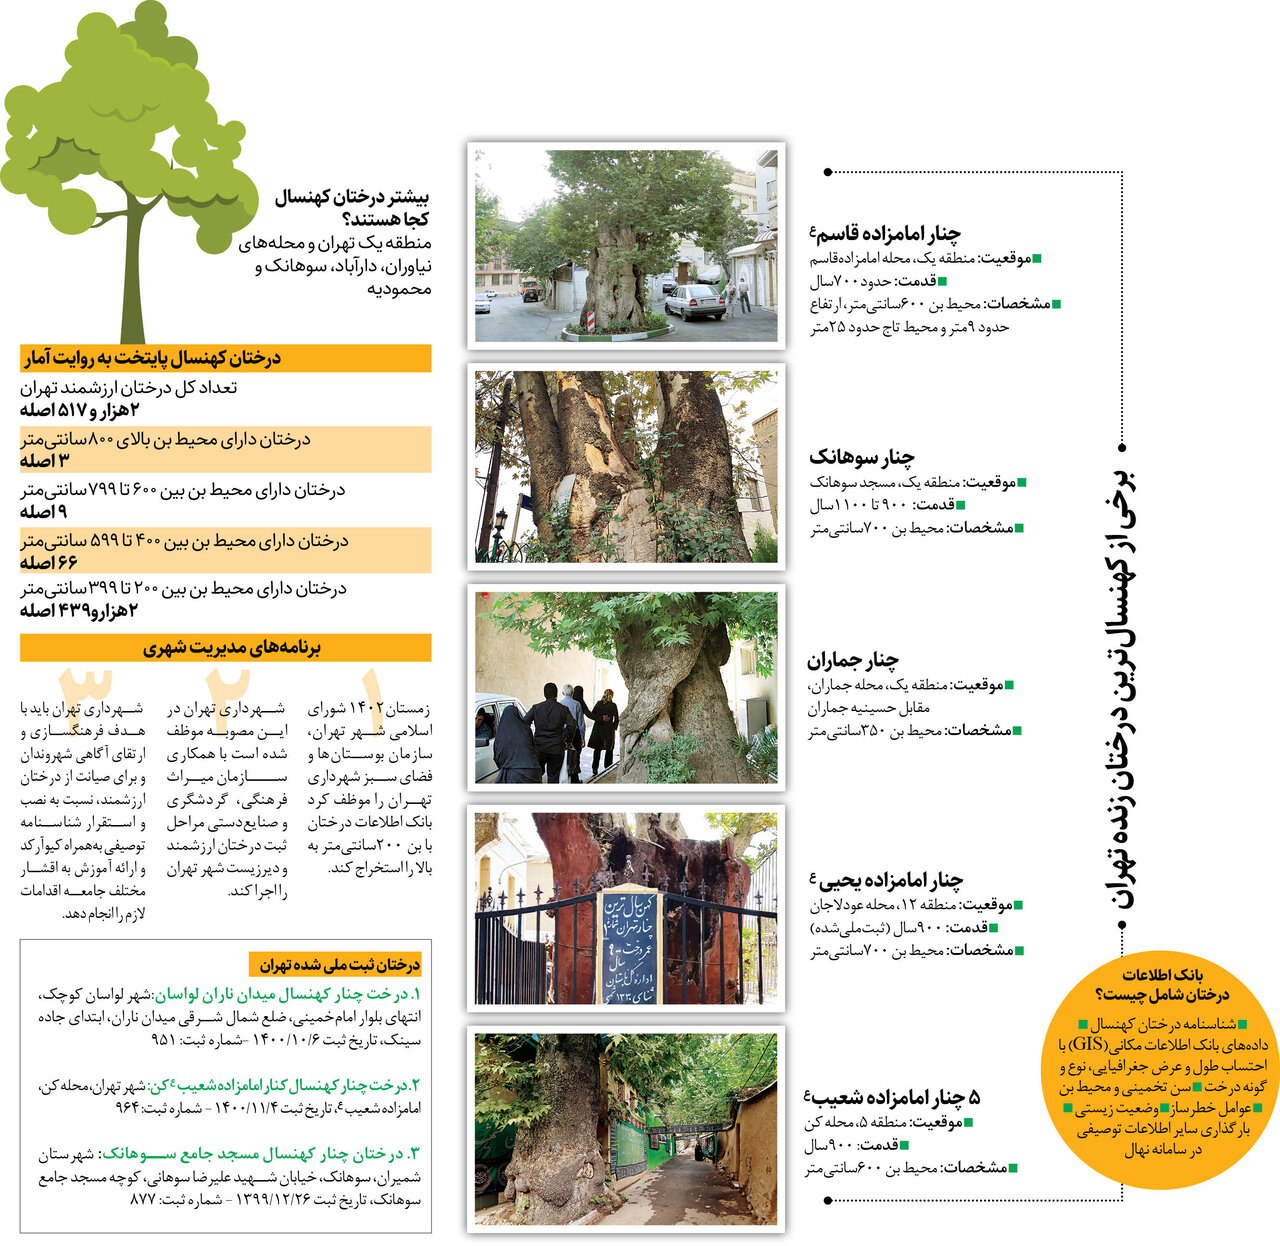 ۲۵۰۰ درخت ارزشمند پایتخت تحت مراقبت ویژه